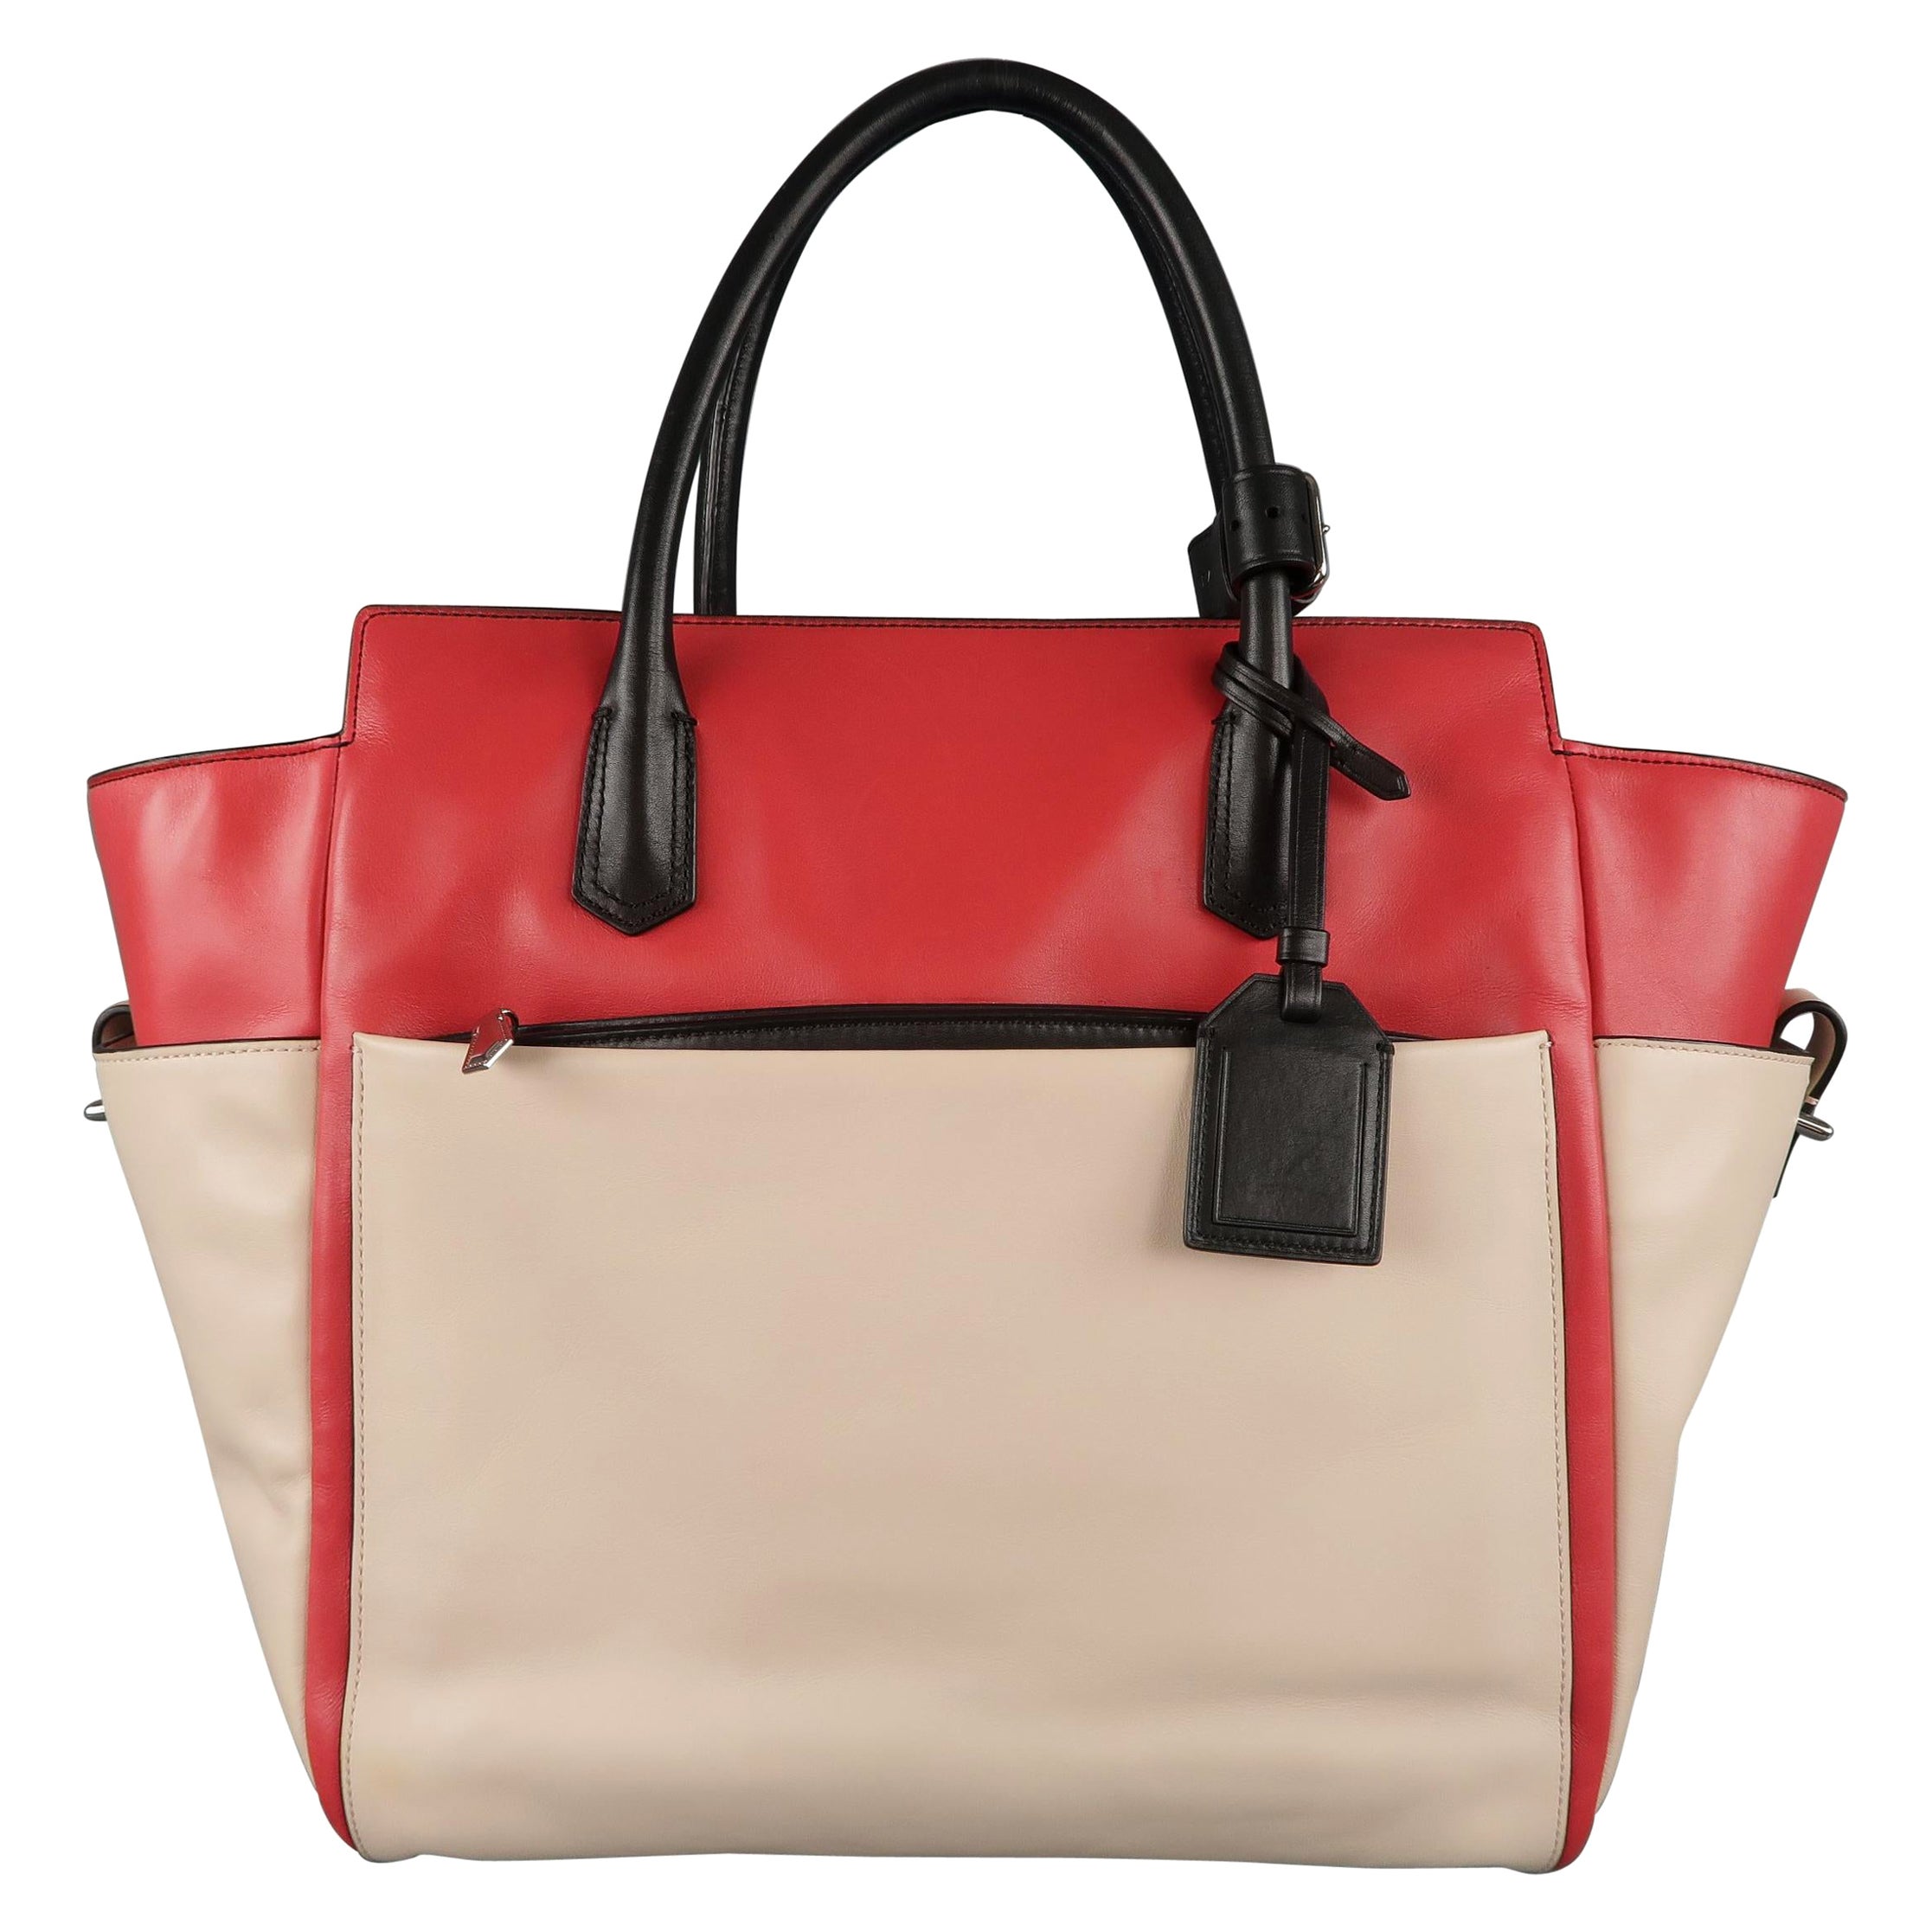 Reed Krakoff Handbag | Bags, Fashion bags, Chic purses